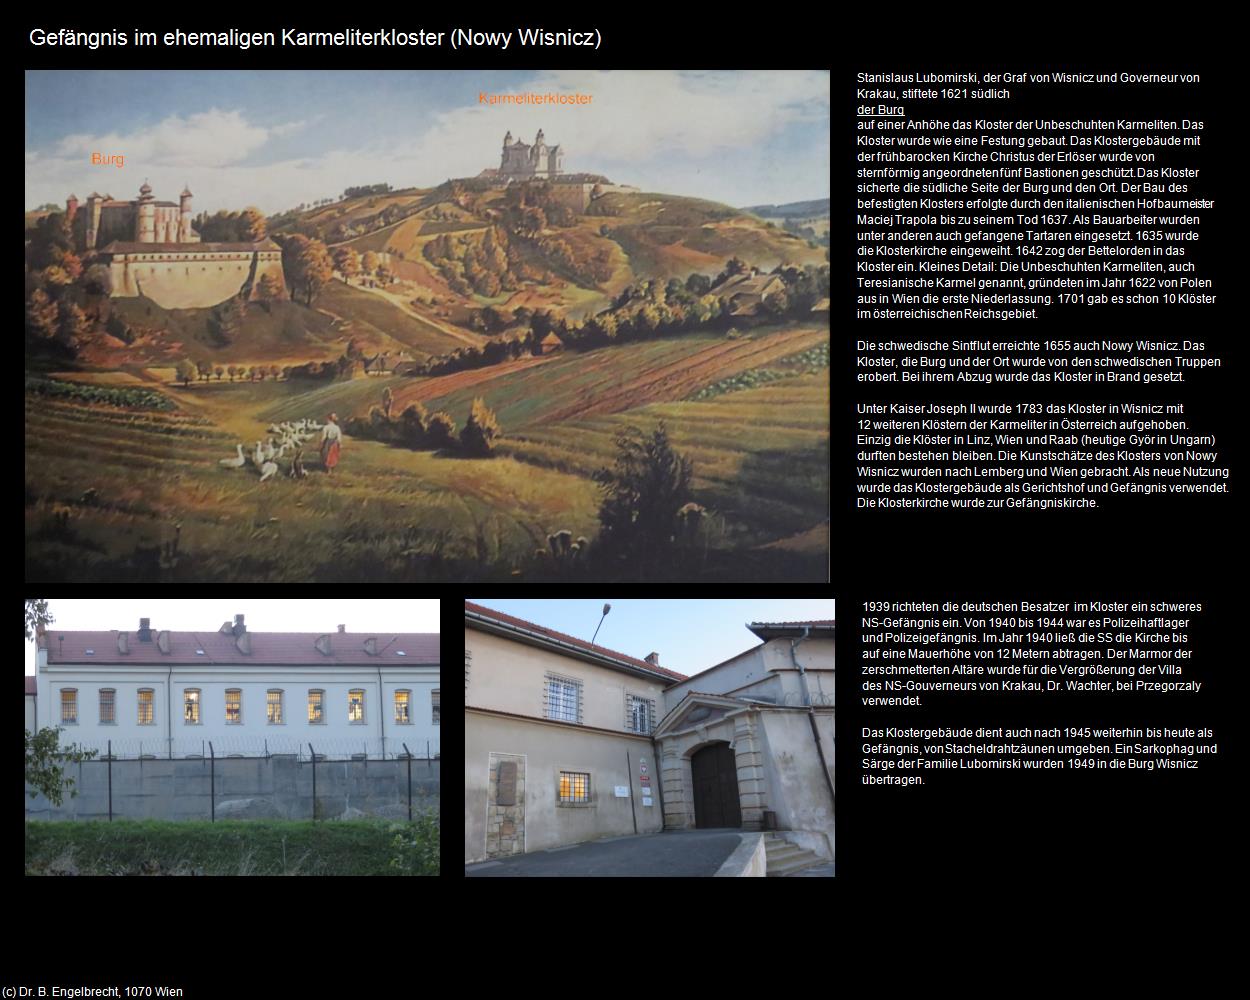 Gefängnis in ehemaligen Karmeliterkloster (Nowy Wisnicz) in POLEN-Galizien(c)B.Engelbrecht